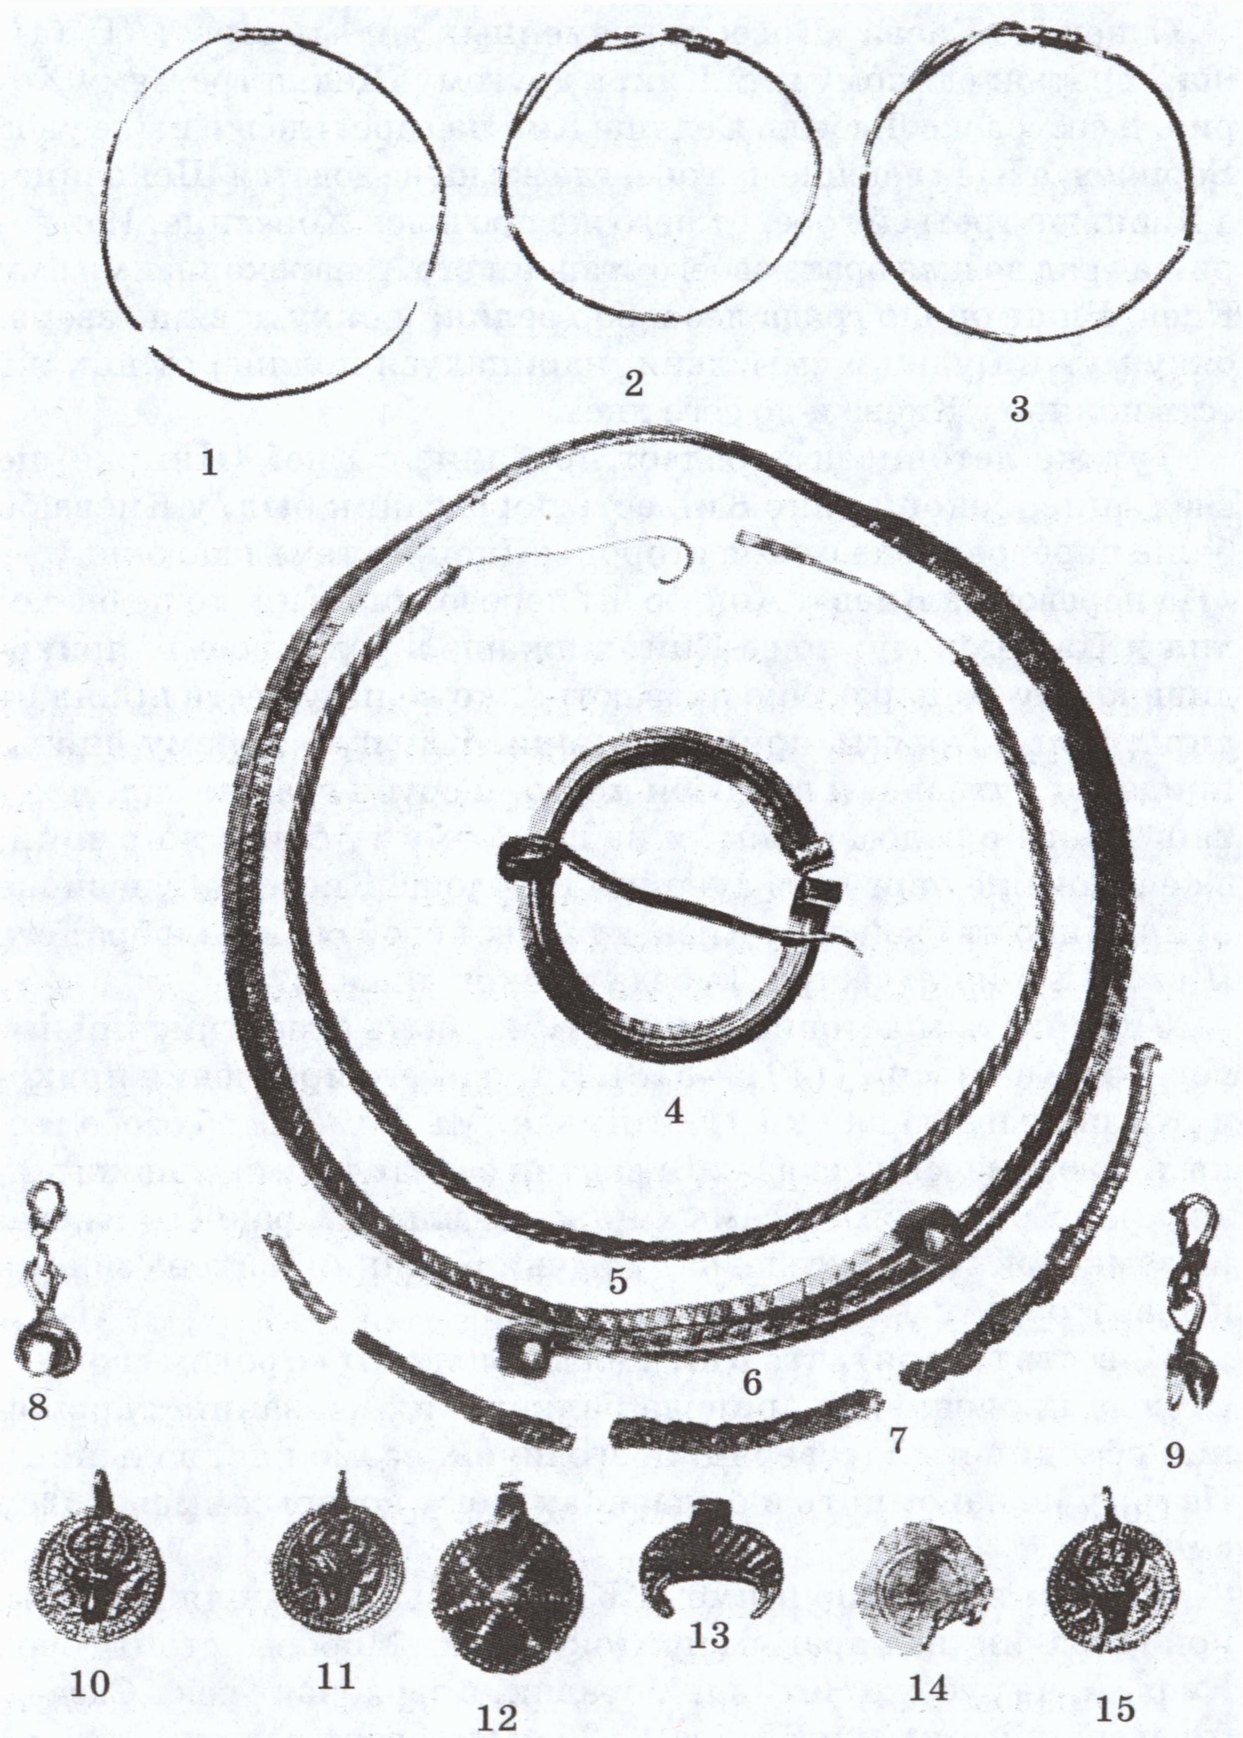 Могильник Нефедьево. Находки из погребения 31. 1—6, 8—15 — цветной металл; 7 — железо